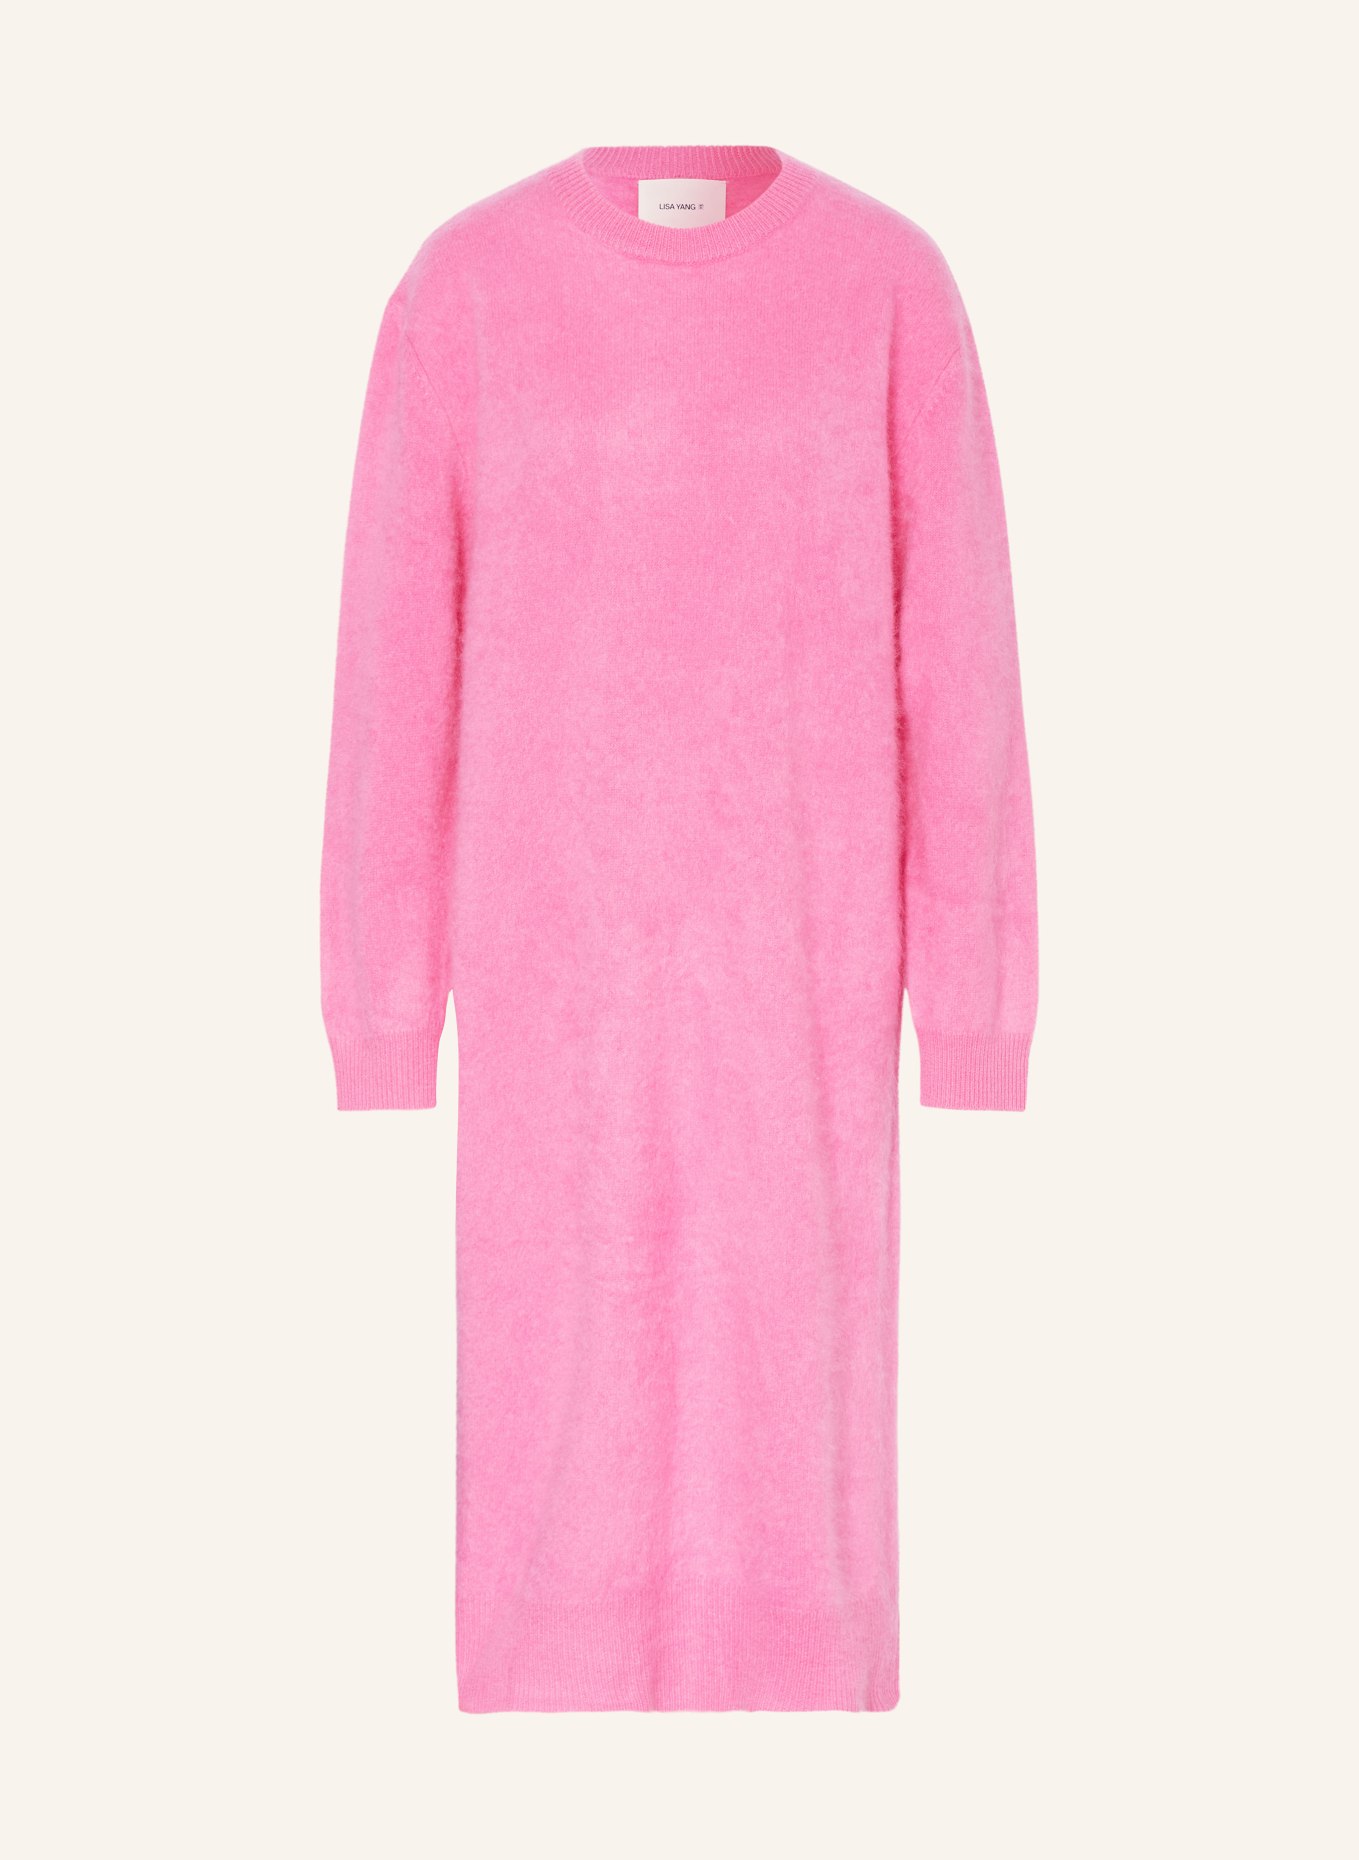 LISA YANG Cashmere knit dress, Color: PINK (Image 1)